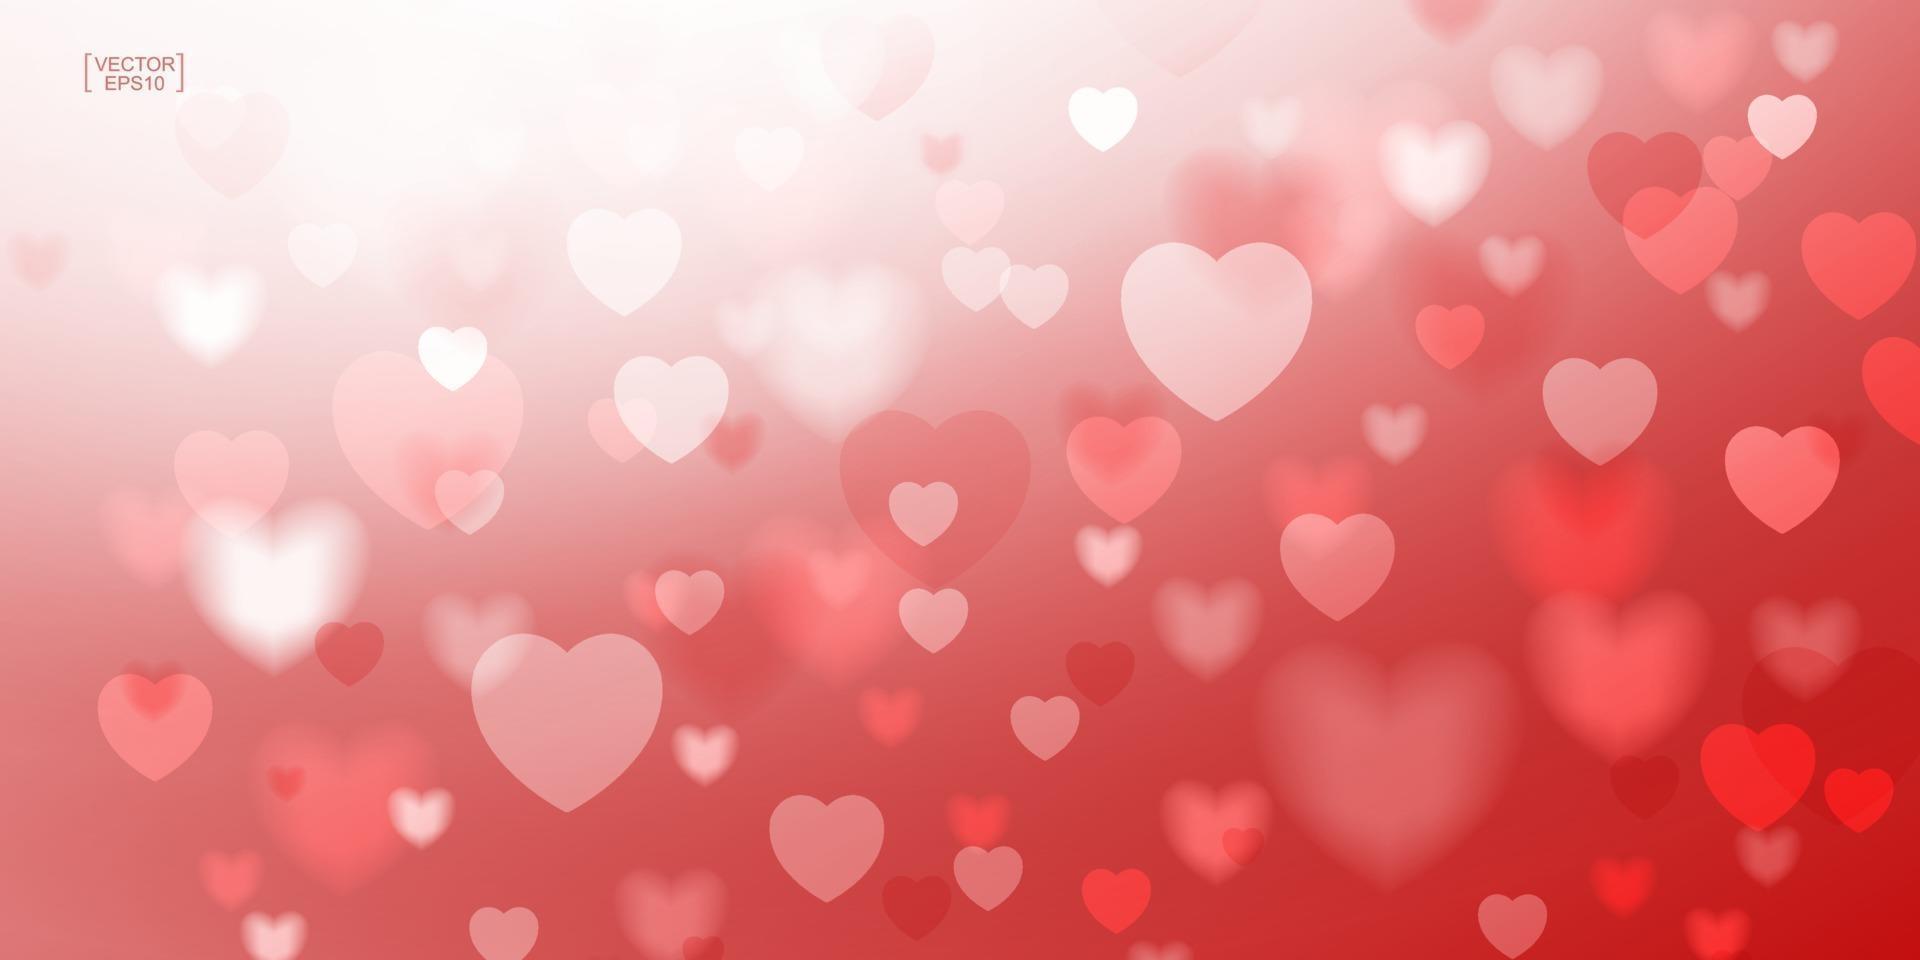 abstrakt rött hjärta för alla hjärtans bakgrund. vektor illustration.